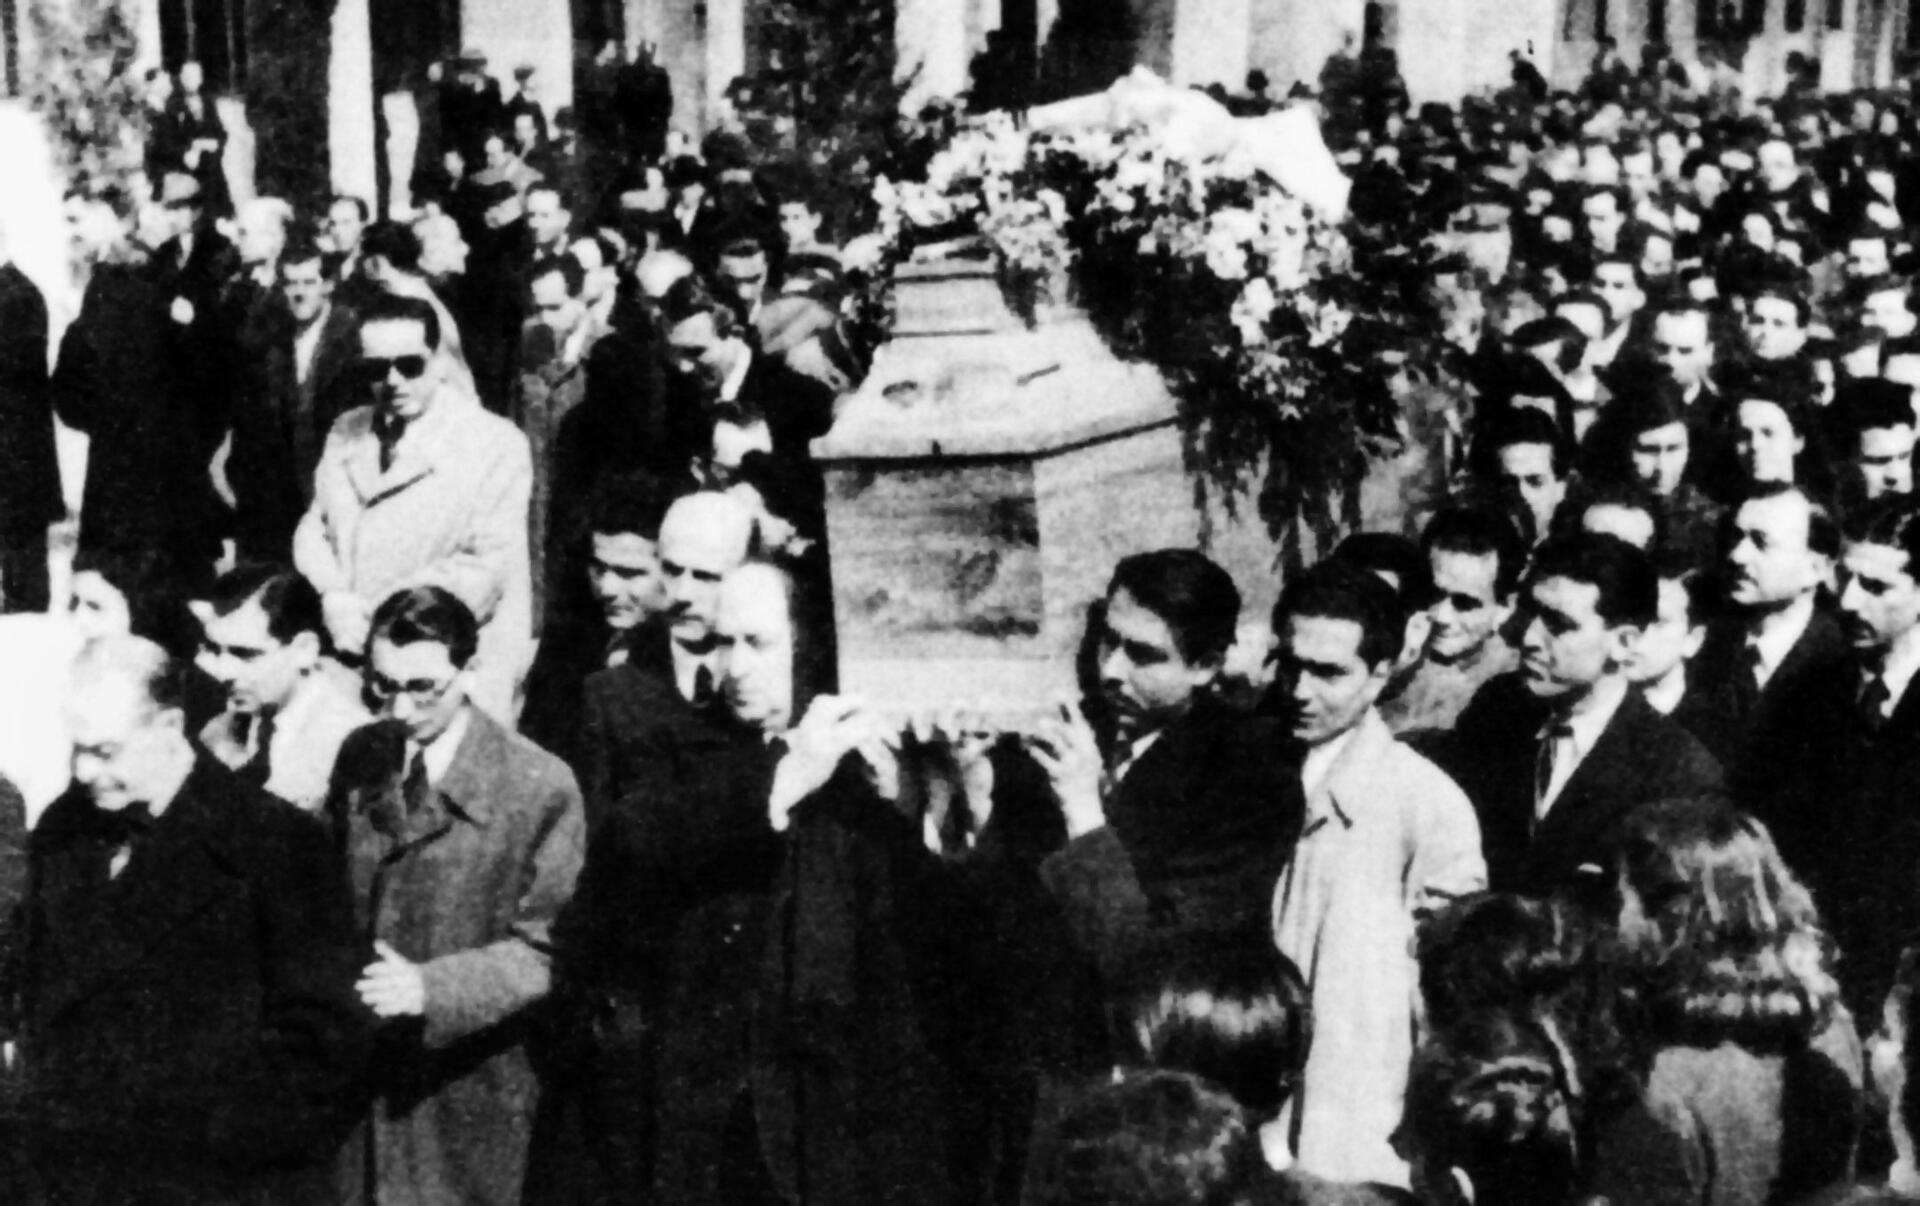 Κωστής Παλαμάς: Πώς η κηδεία του από μήνυμα πένθους, μετατράπηκε σε σάλπισμα ξεσηκωμού για την - υπό γερμανική κατοχή - Αθήνα - Ελεύθερος Τύπος